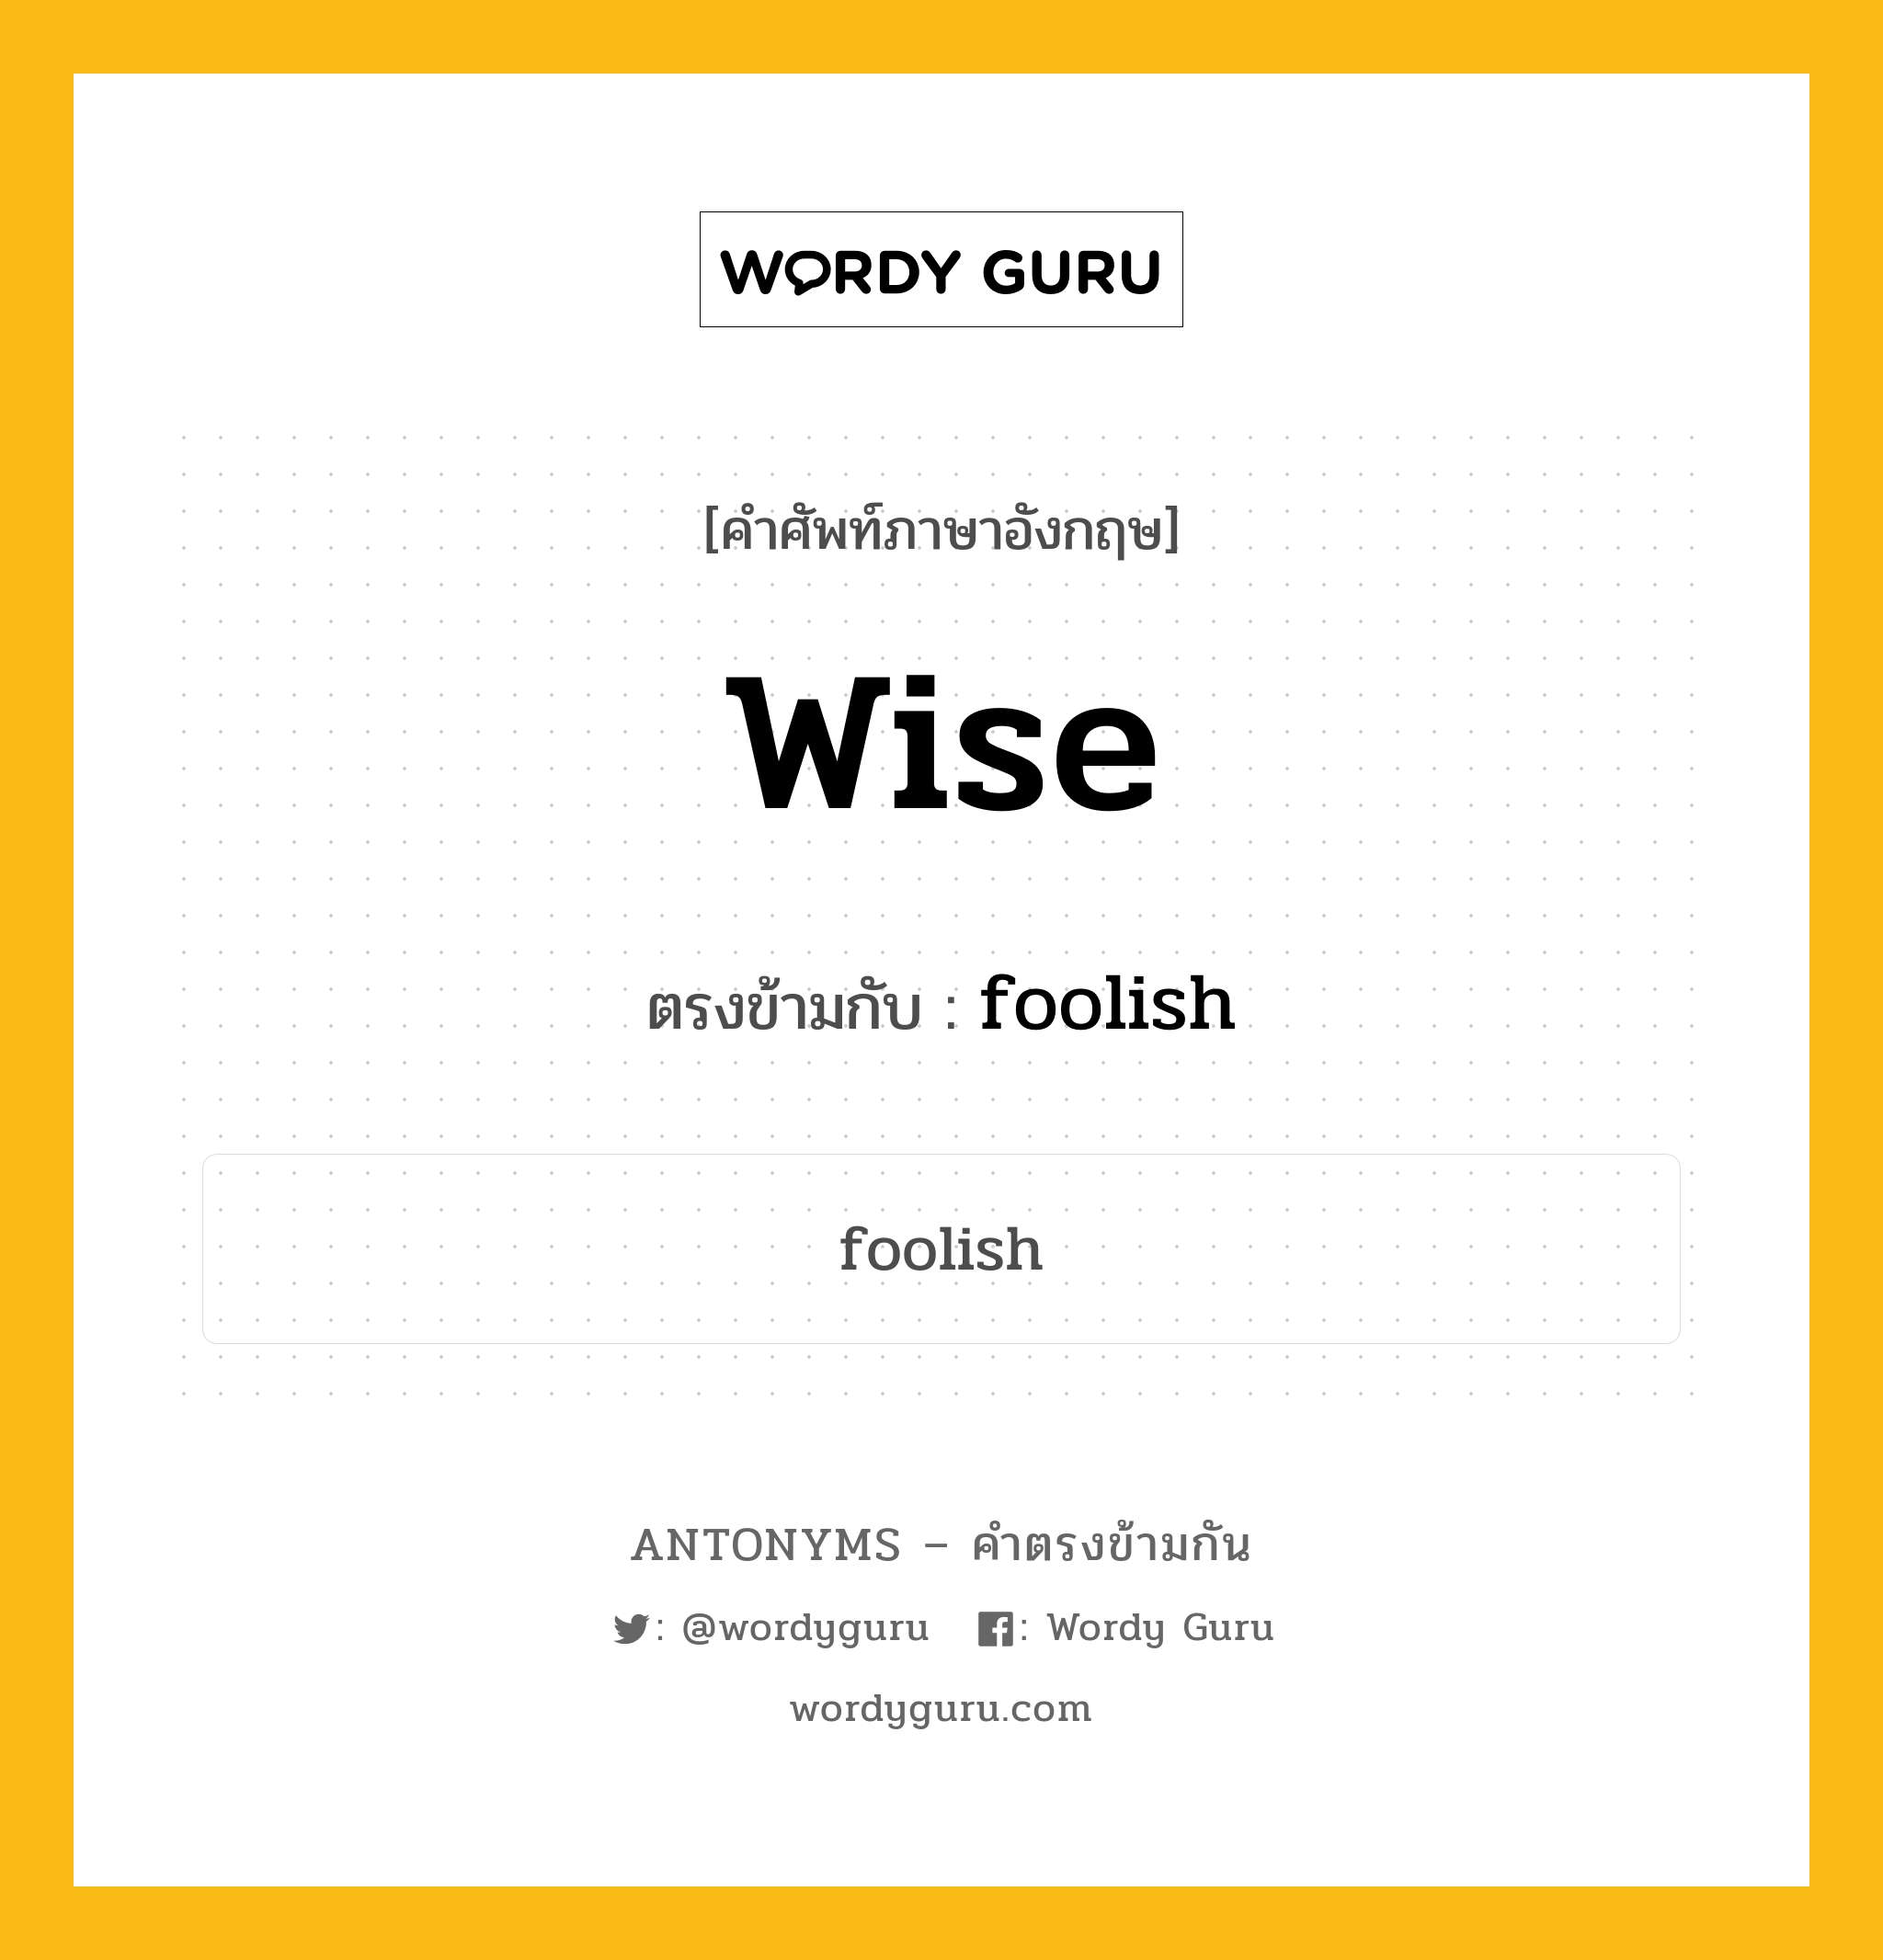 wise เป็นคำตรงข้ามกับคำไหนบ้าง?, คำศัพท์ภาษาอังกฤษ wise ตรงข้ามกับ foolish หมวด foolish